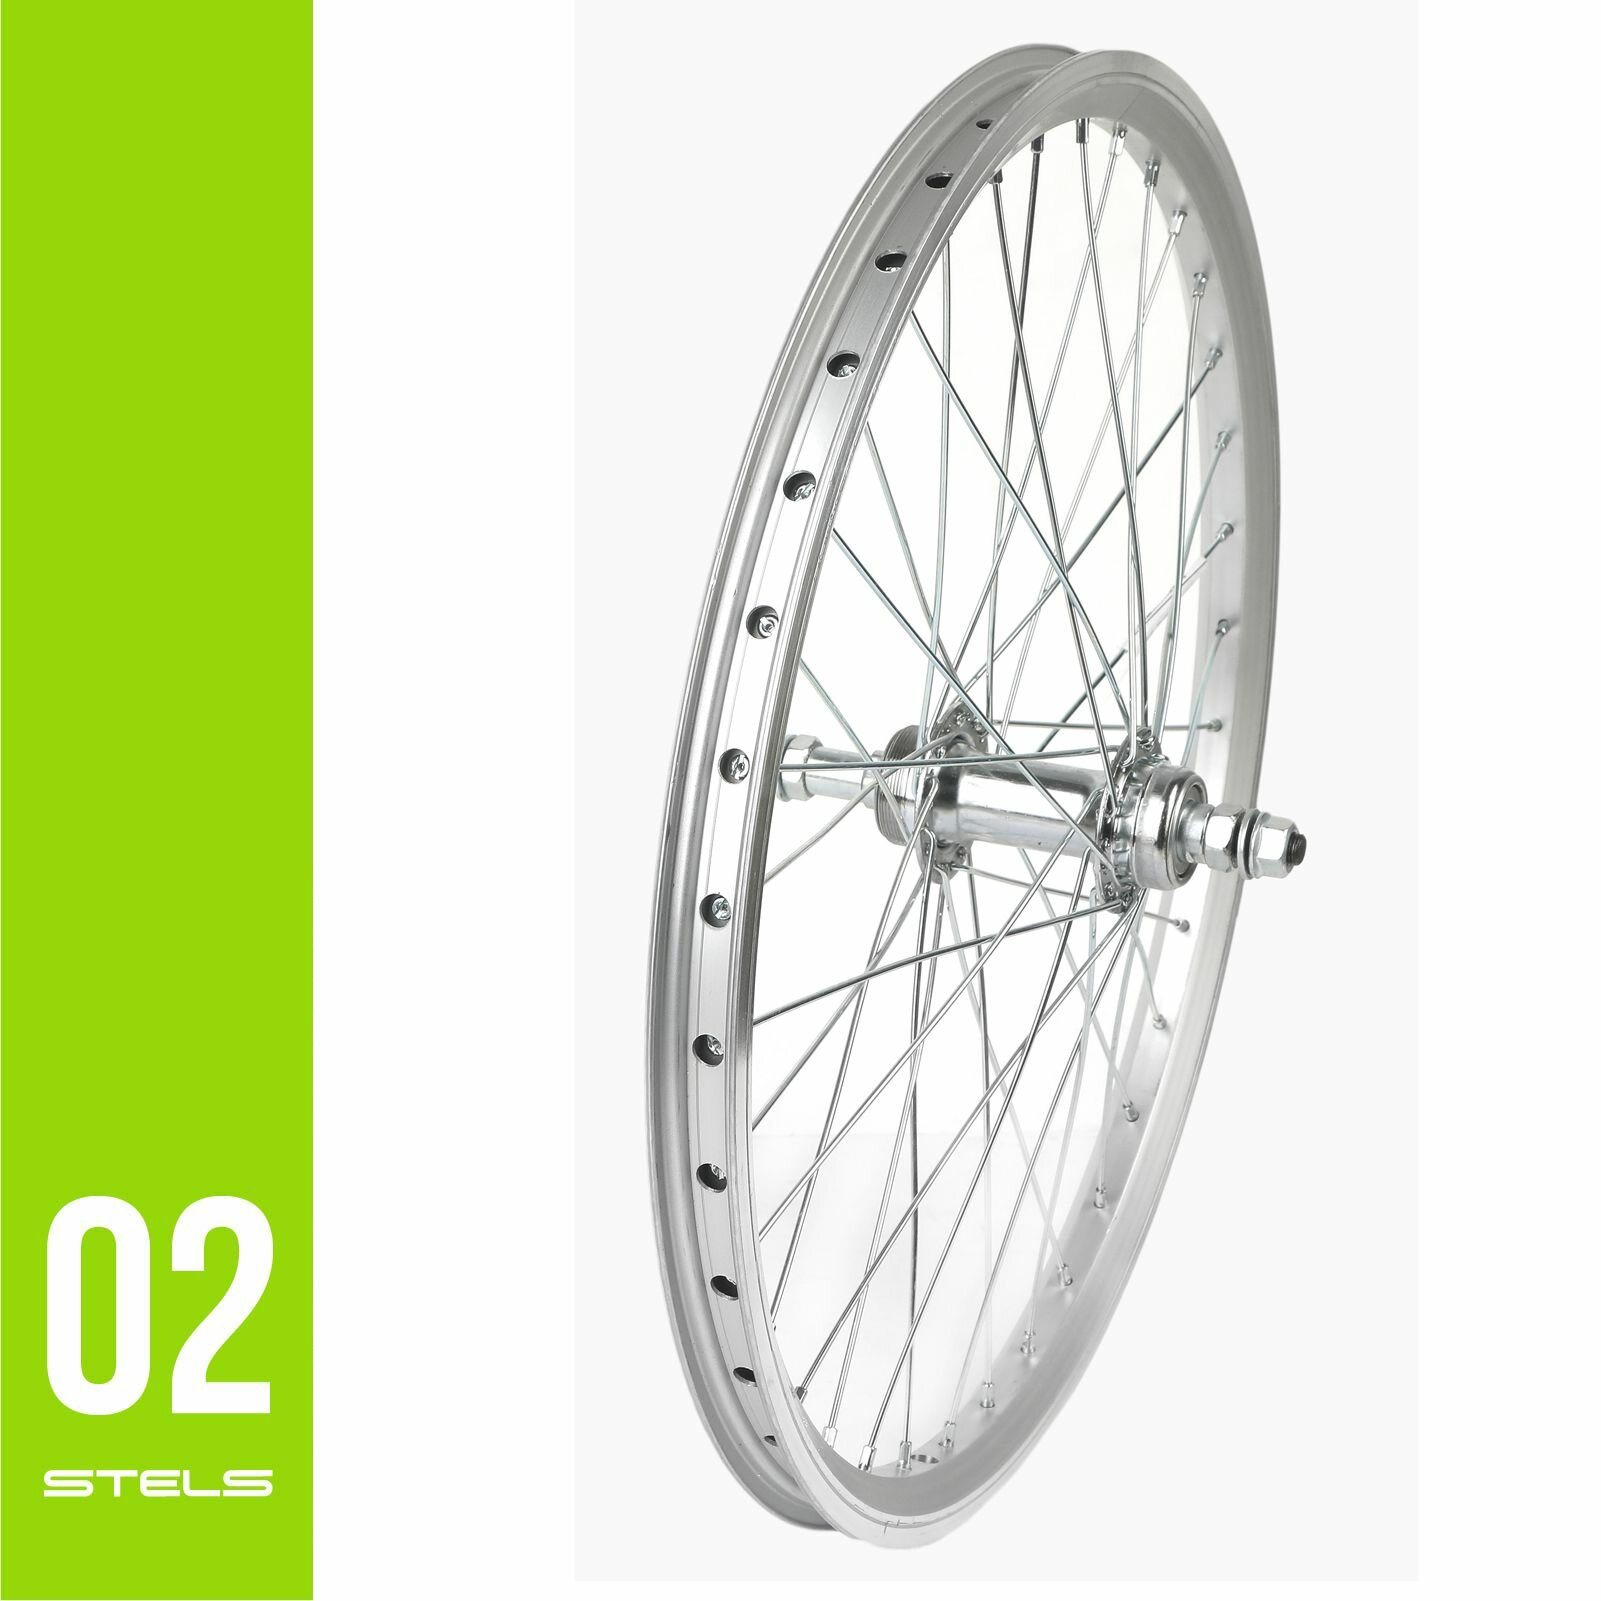 Колесо для велосипеда заднее 20" STELS обод двойной алюминиевый серебристый, V-br, втулка под трещотку 6-7ск под гайку NEW